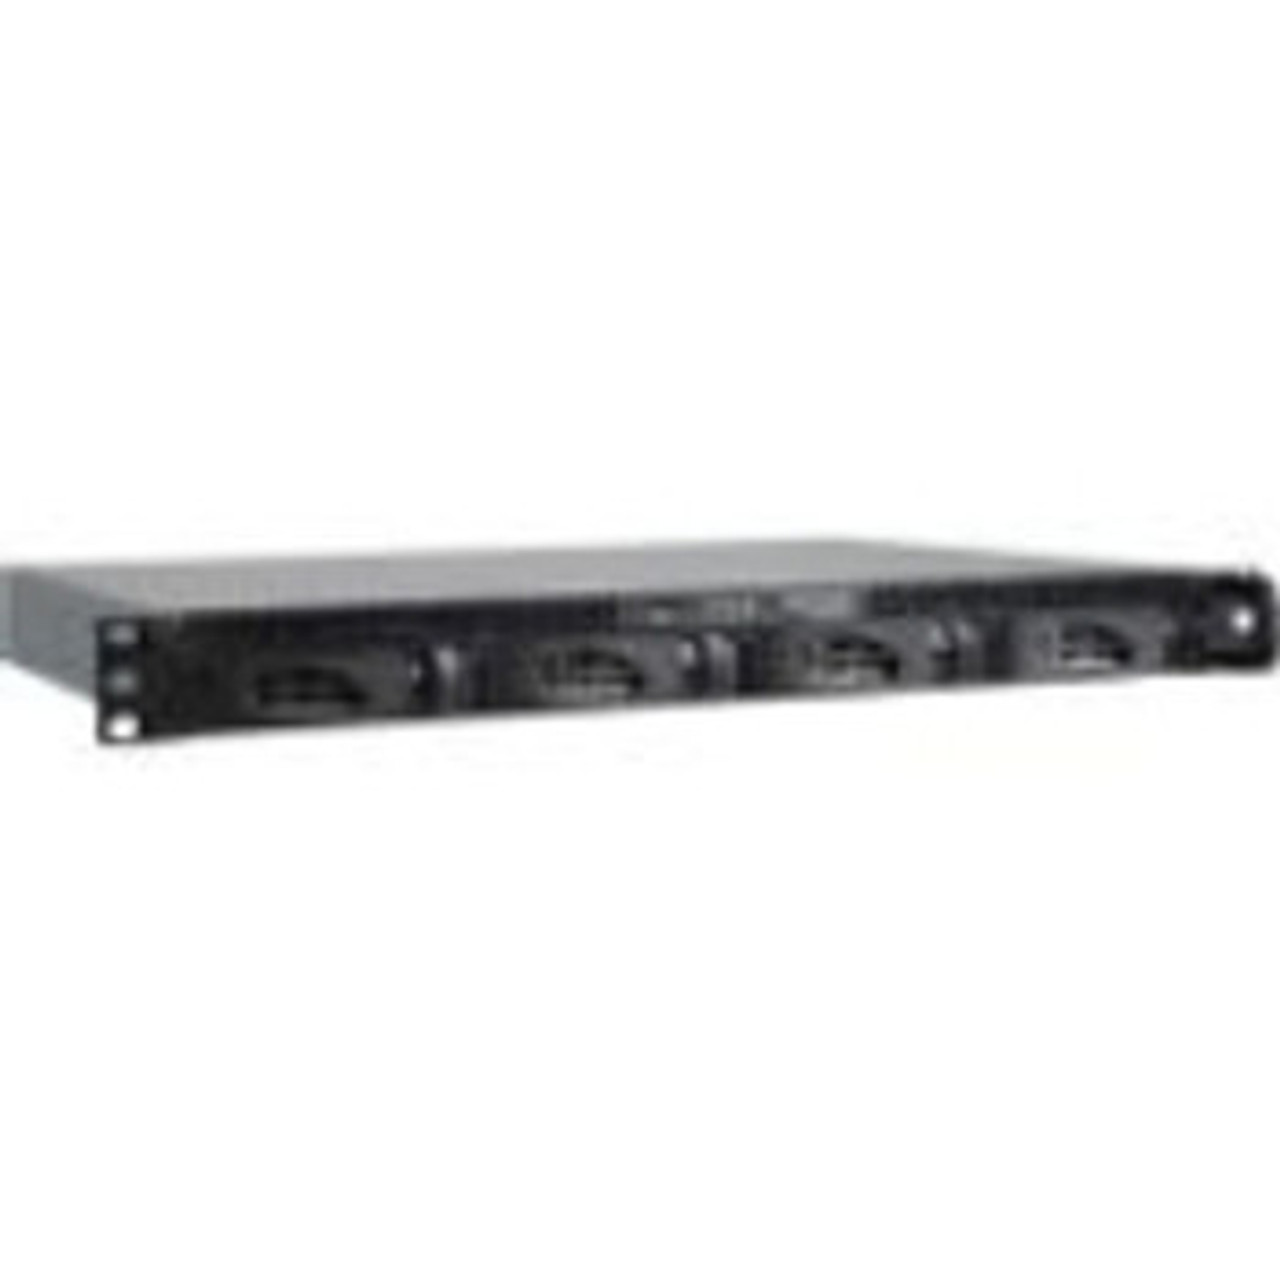 RR230400-100NES | Netgear | ReadyNAS 2304 1U 4-bay 2.0 GHz 2GB RAM RAID JBOD X-RAID Gigabit Ethernet eSATA USB 3.0 NAS Server